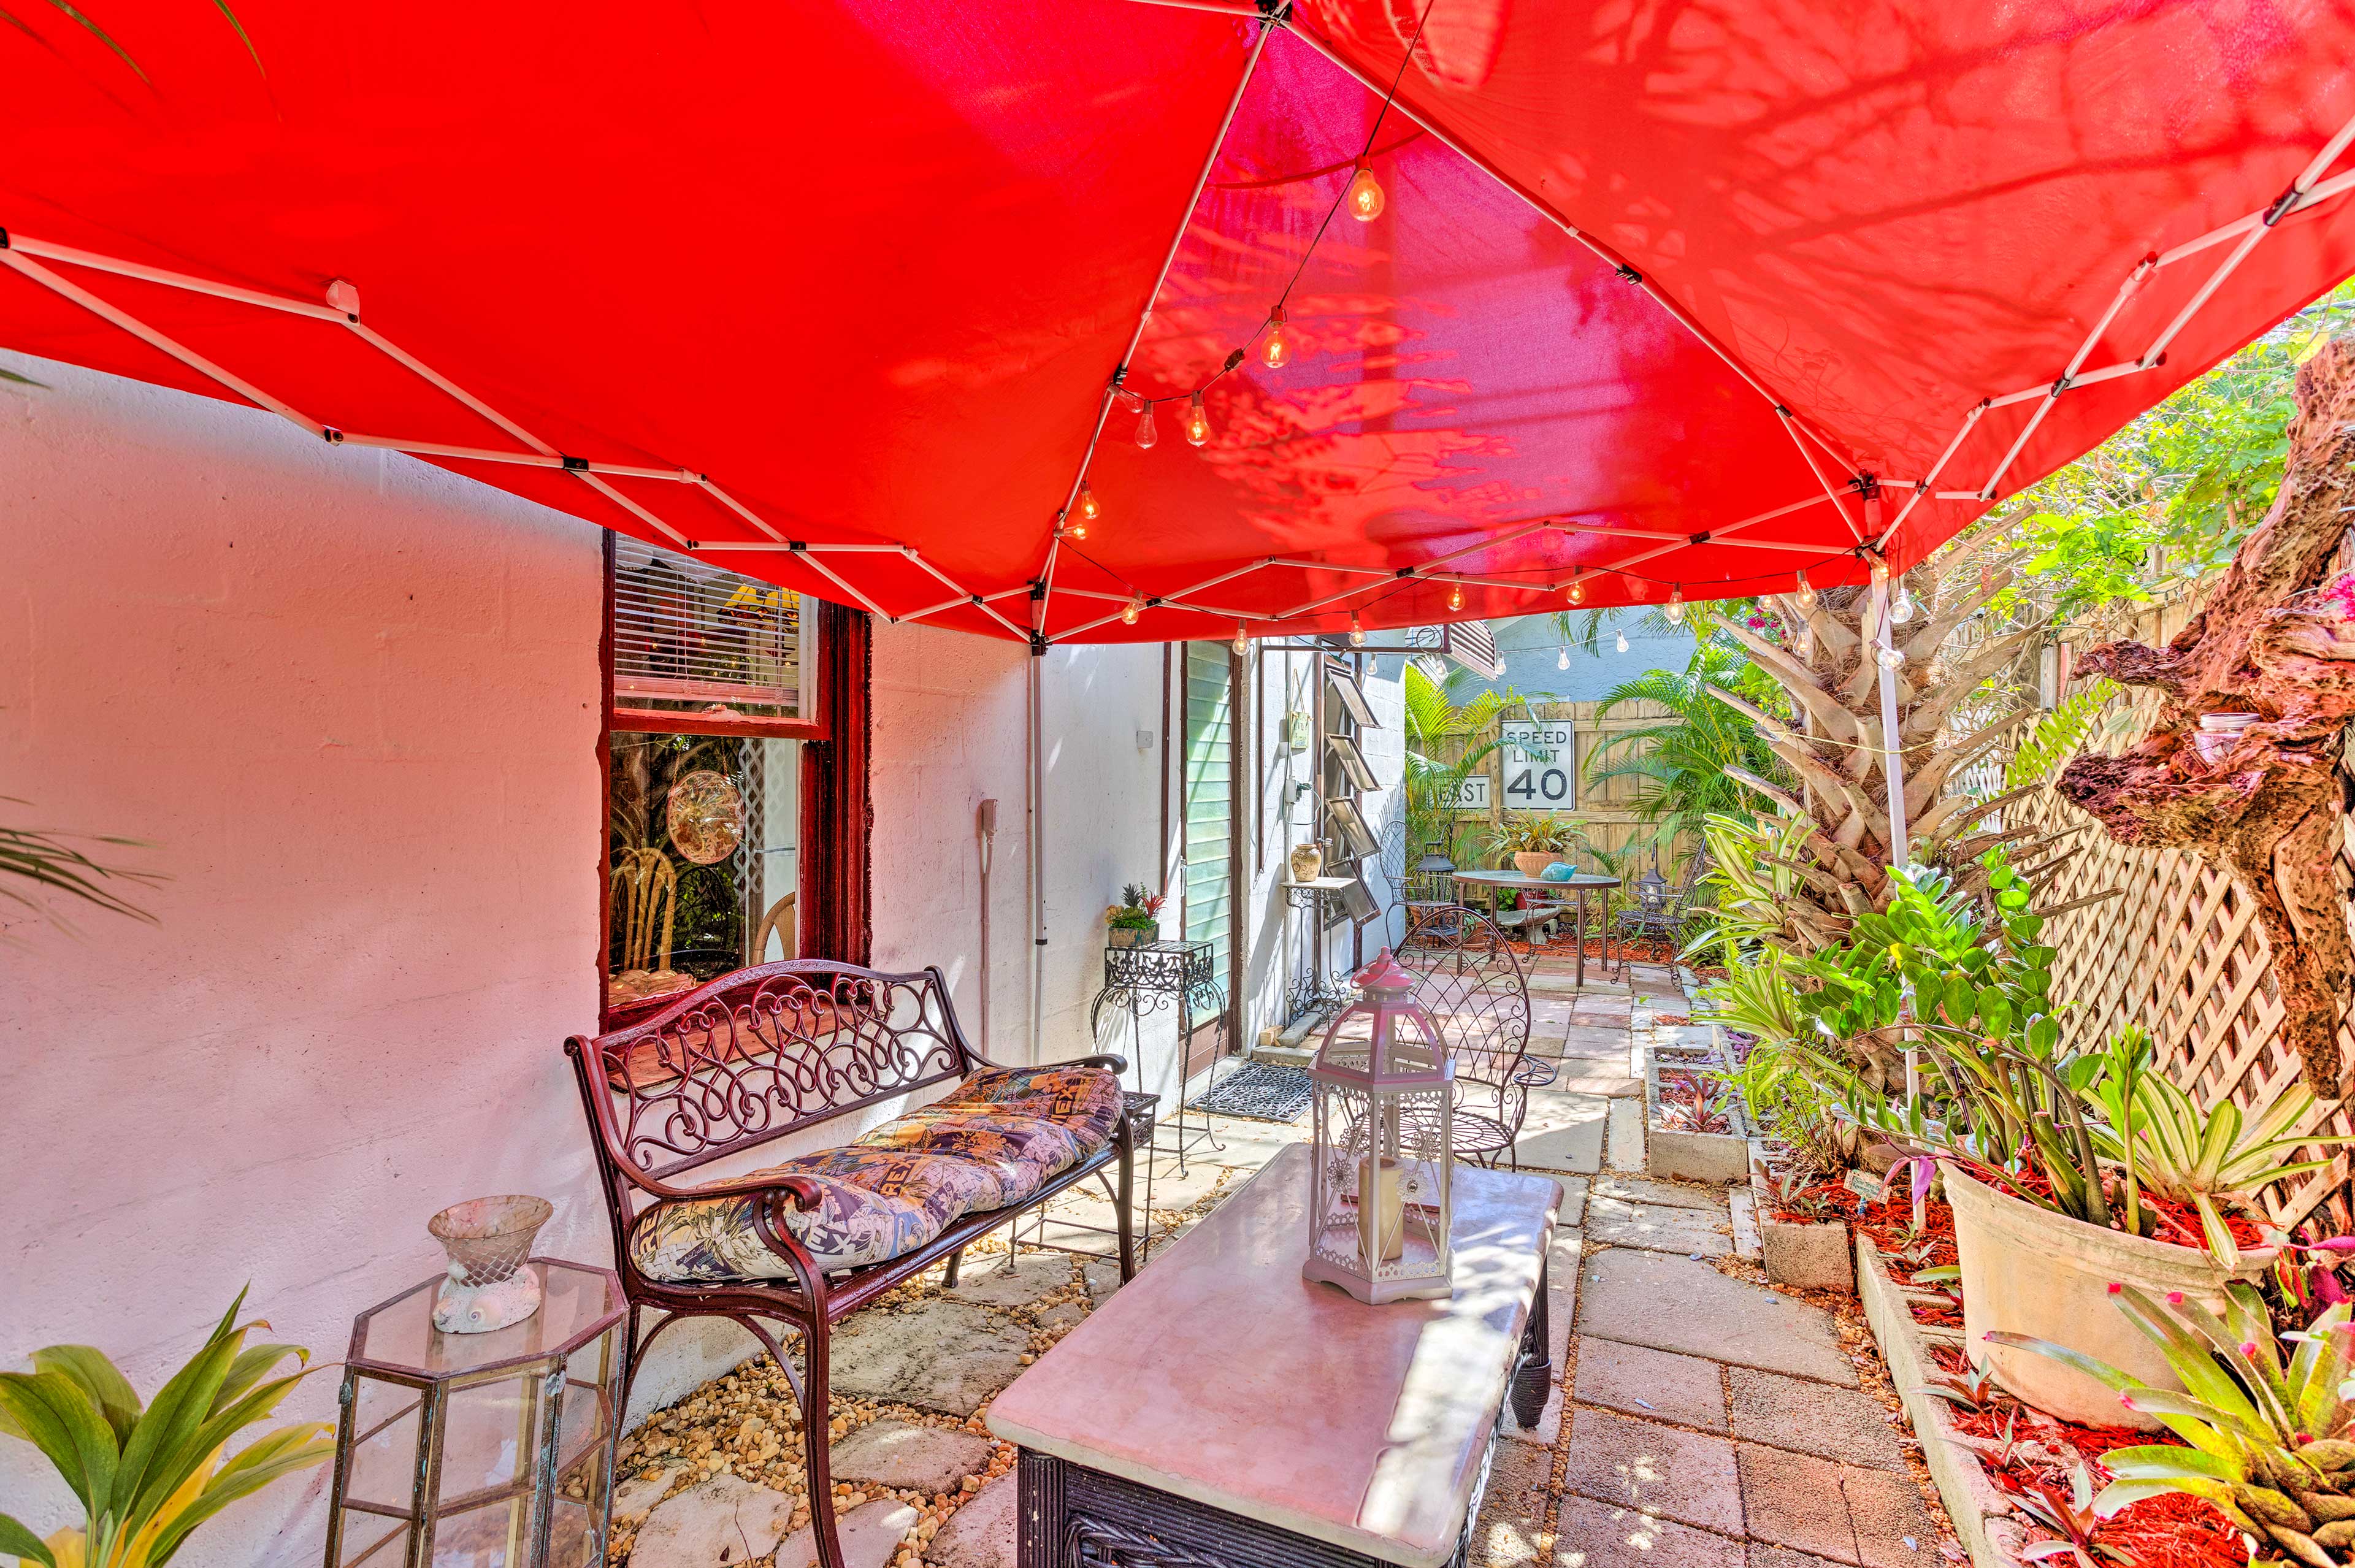 Private Patio | Garden | Outdoor Seating | Sun Umbrella | String Lights